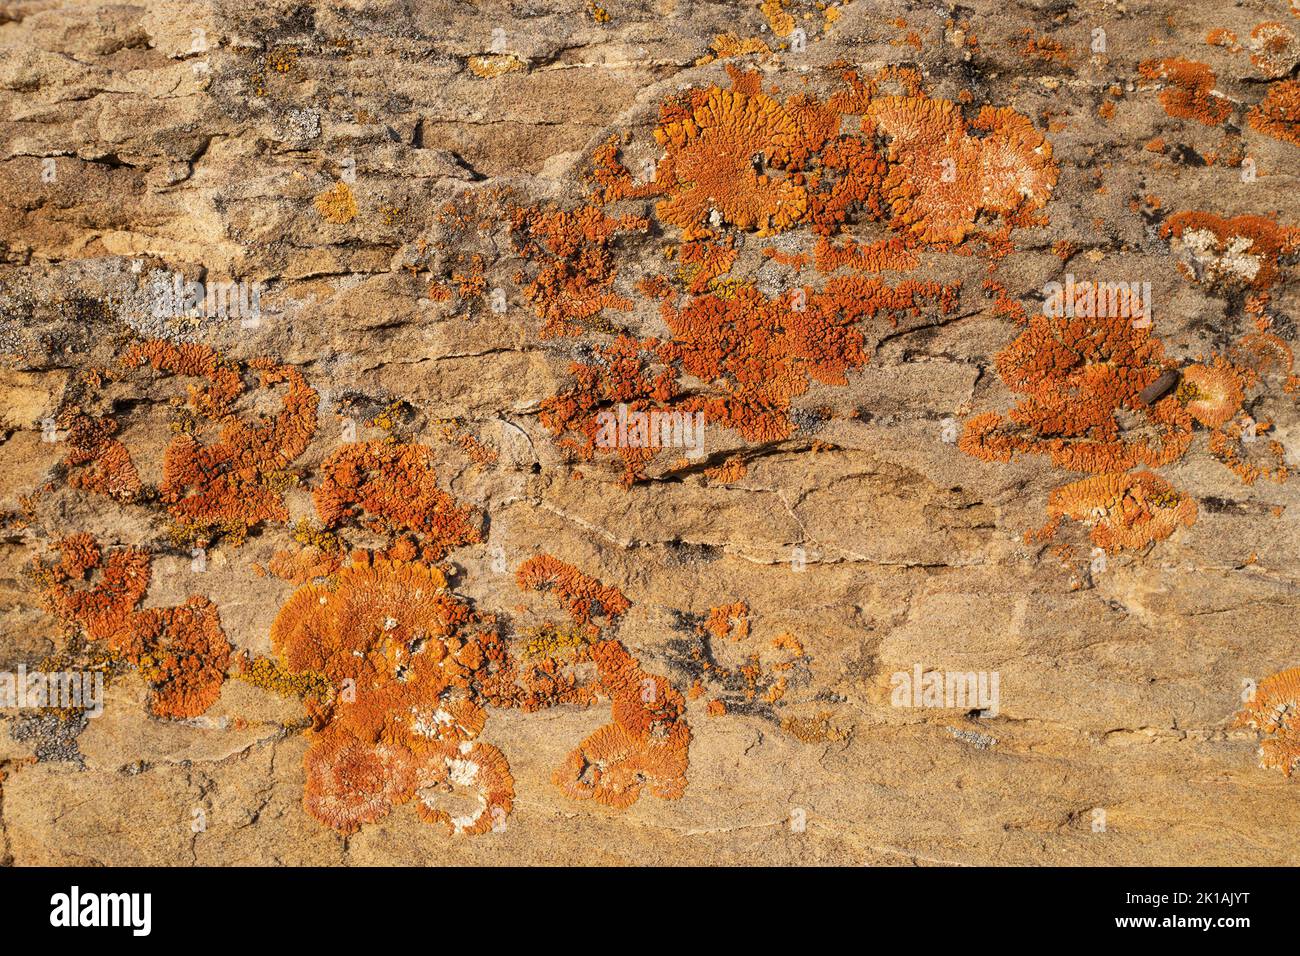 Affioramento di arenaria del Paleocene delle colline di Porcupine formazione con licheni arancioni che crescono sulla roccia sedimentaria Foto Stock